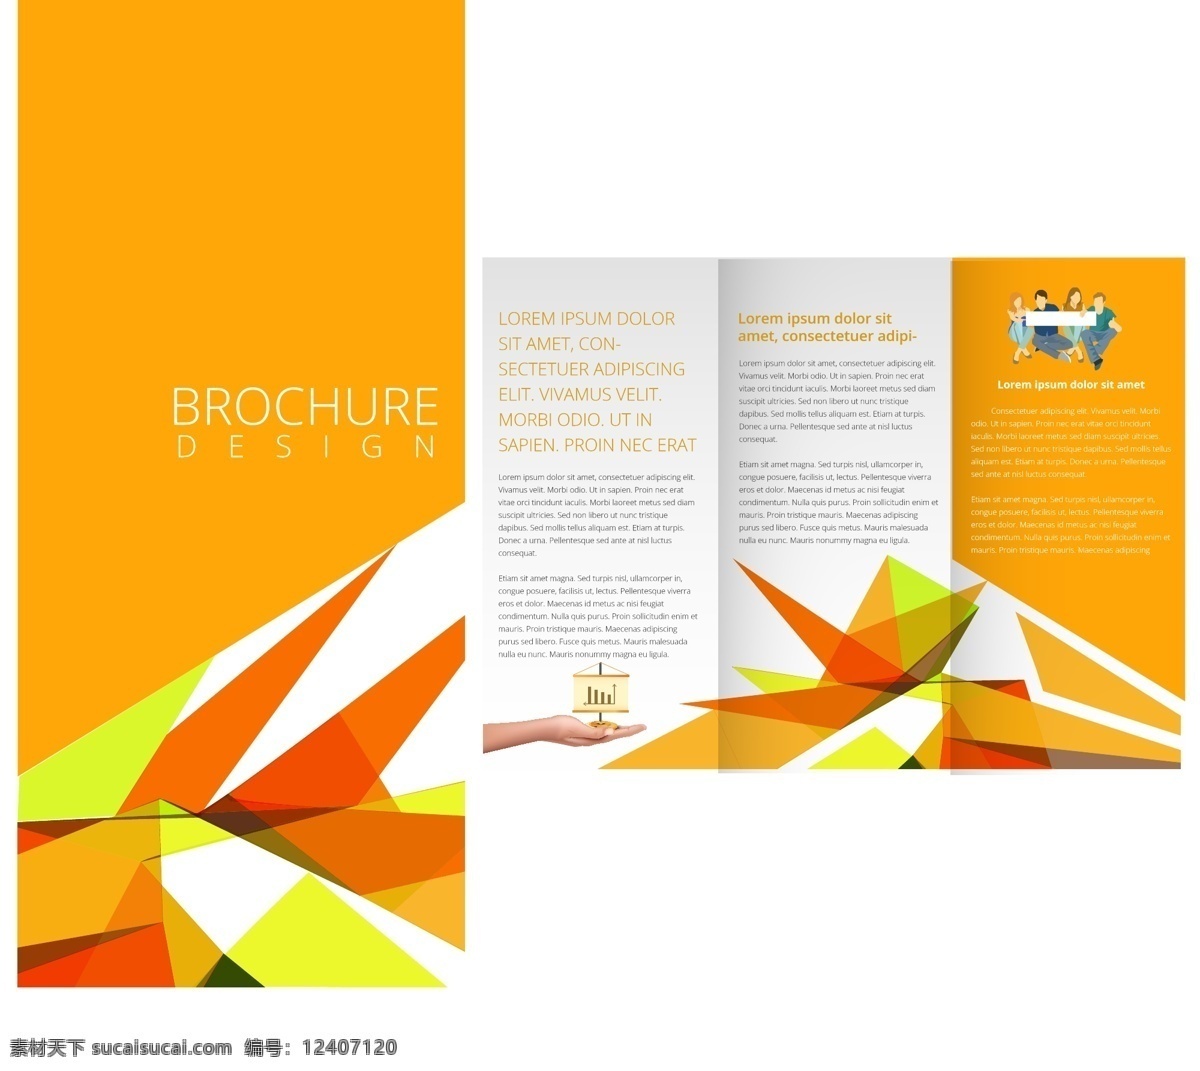 橙色 创意 企业 宣传册 模板 矢量素材 设计素材 背景素材